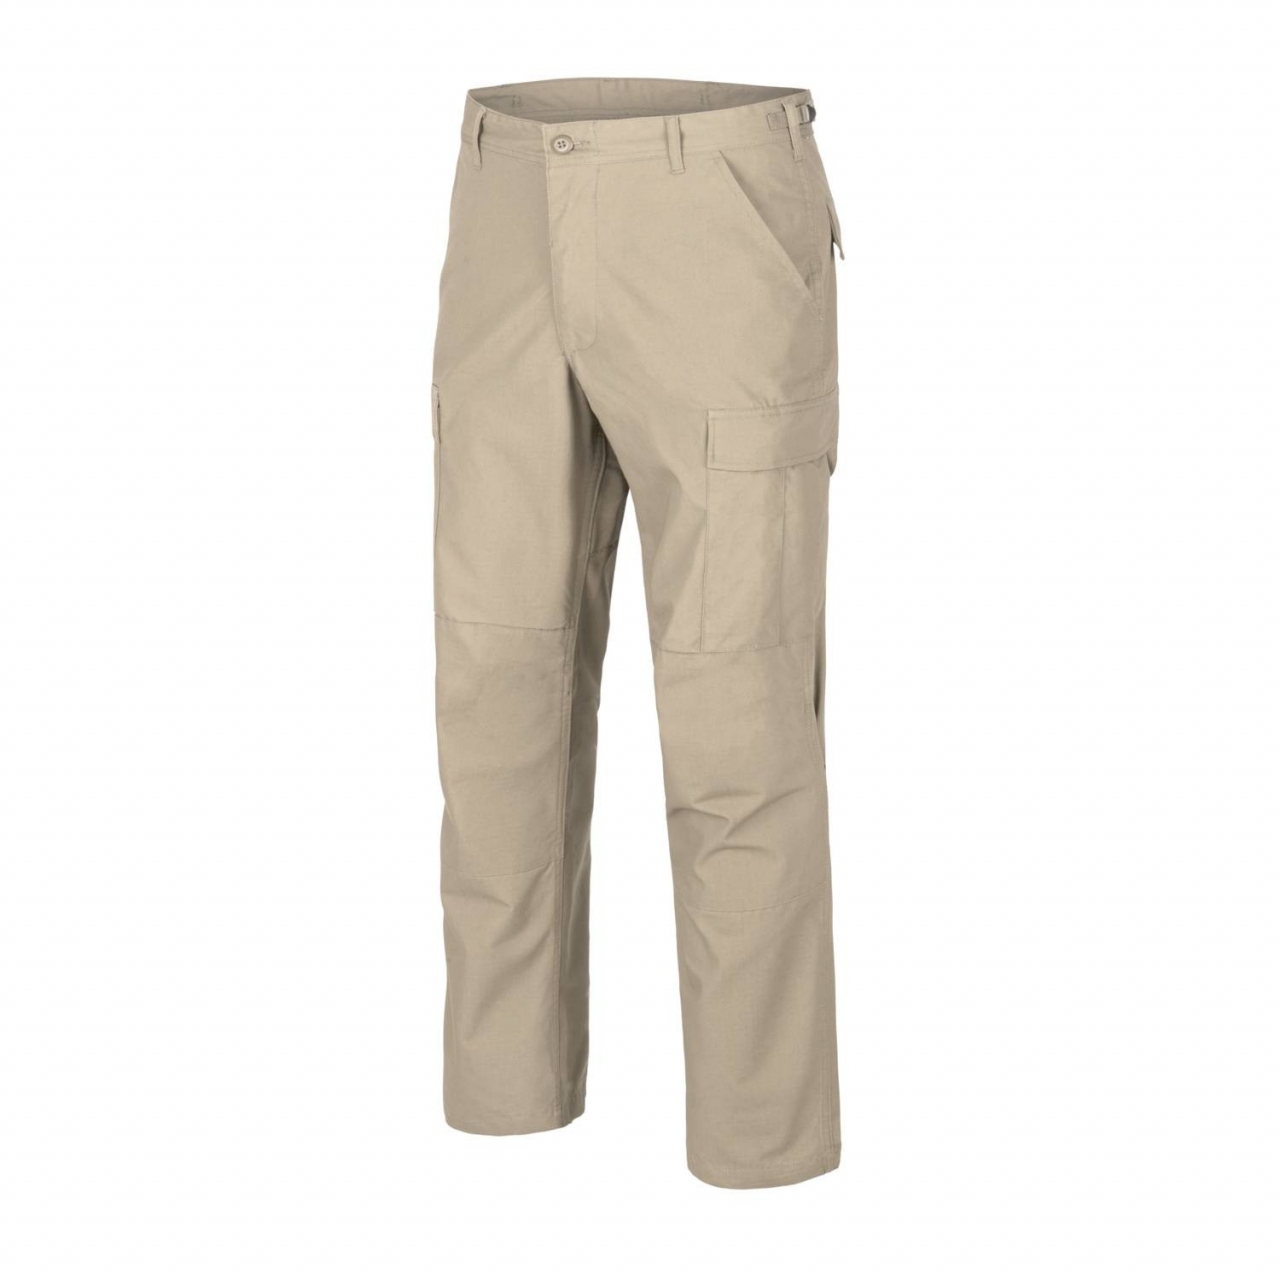 Kalhoty Helikon BDU Pants Ripstop - béžové, L Long